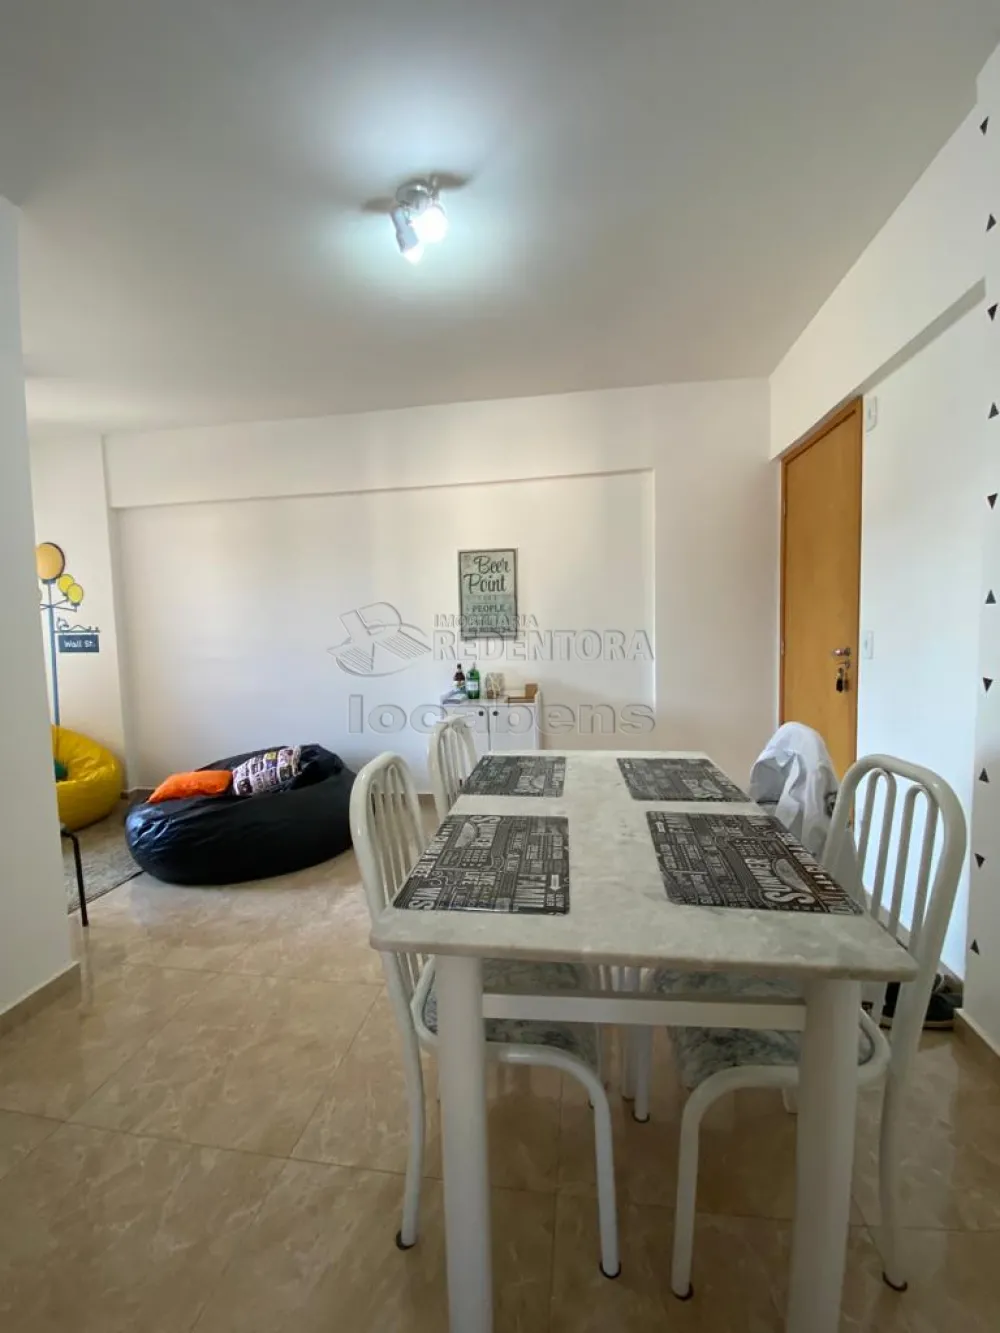 Comprar Apartamento / Padrão em São José do Rio Preto apenas R$ 295.000,00 - Foto 2